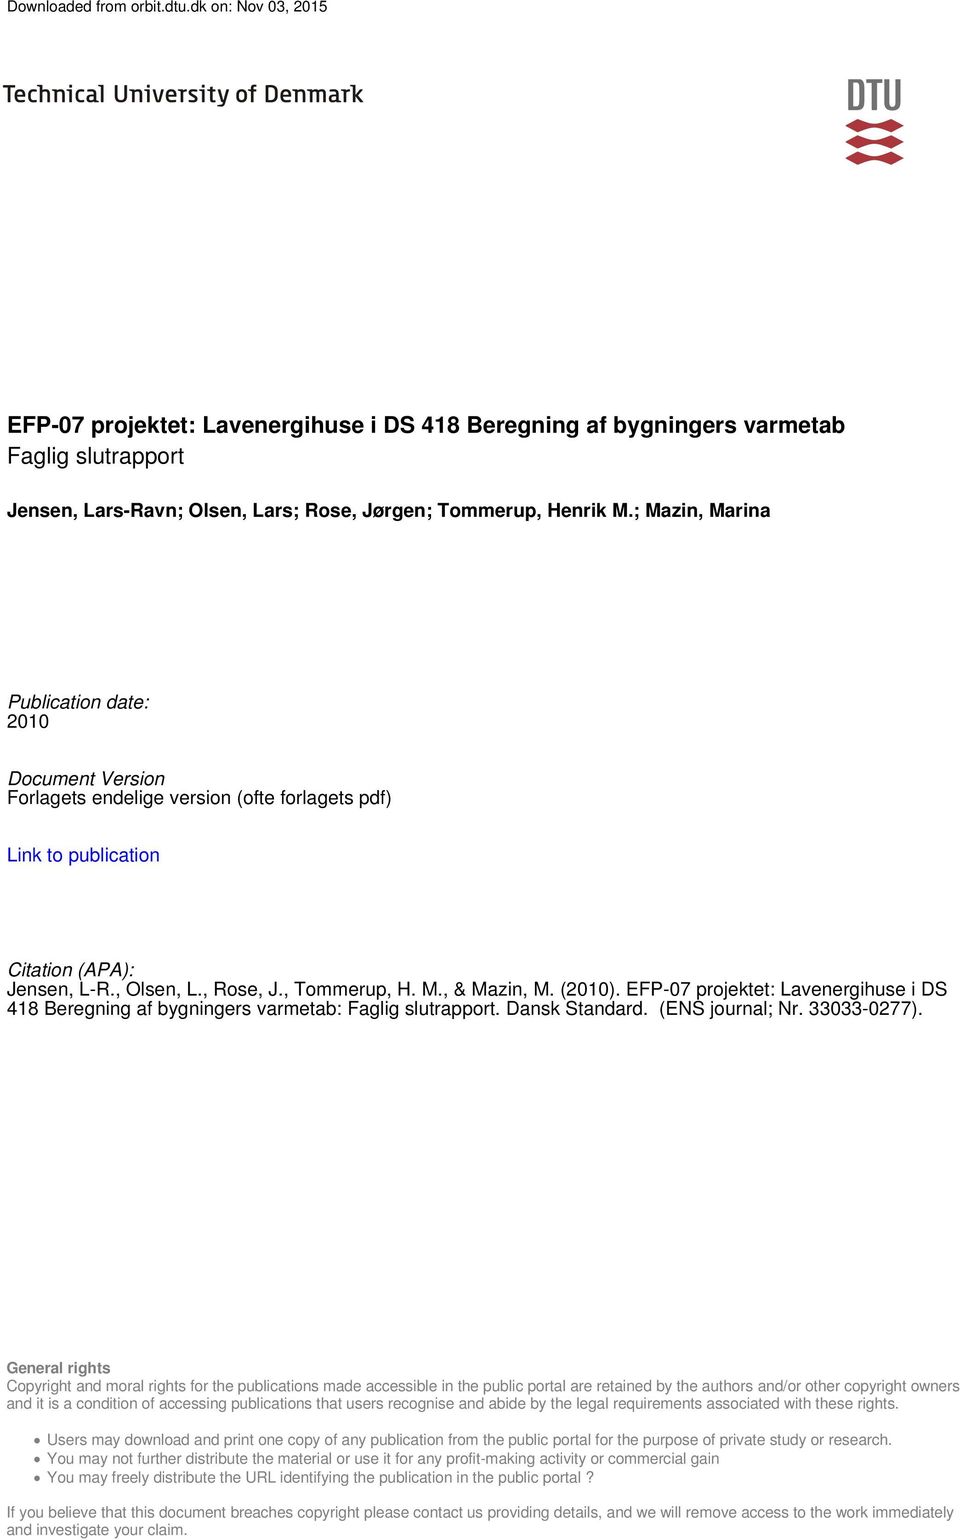 (2010). EFP-07 projektet: Lavenergihuse i DS 418 Beregning af bygningers varmetab: Faglig slutrapport. Dansk Standard. (ENS journal; Nr. 33033-0277).